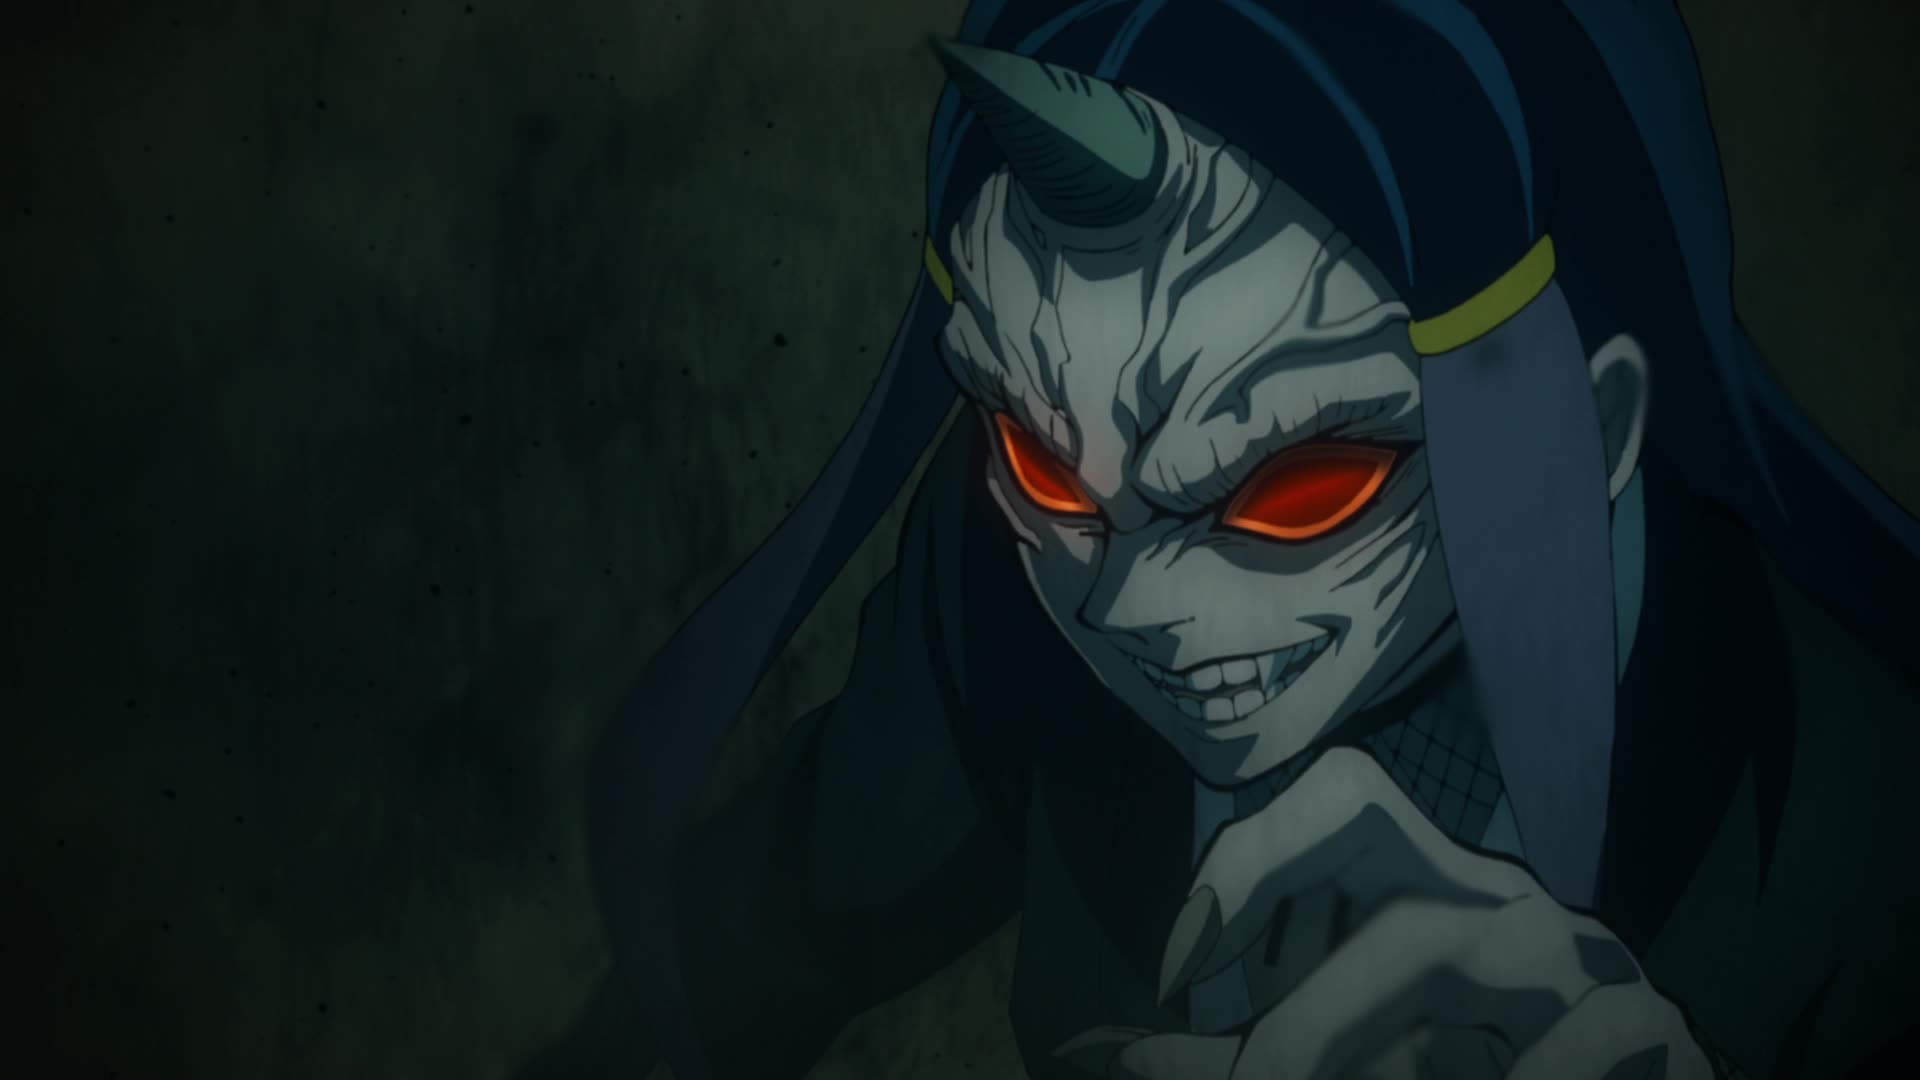 Demon Slayer: Kimetsu no Yaiba Episode Muzan Kibutsuji